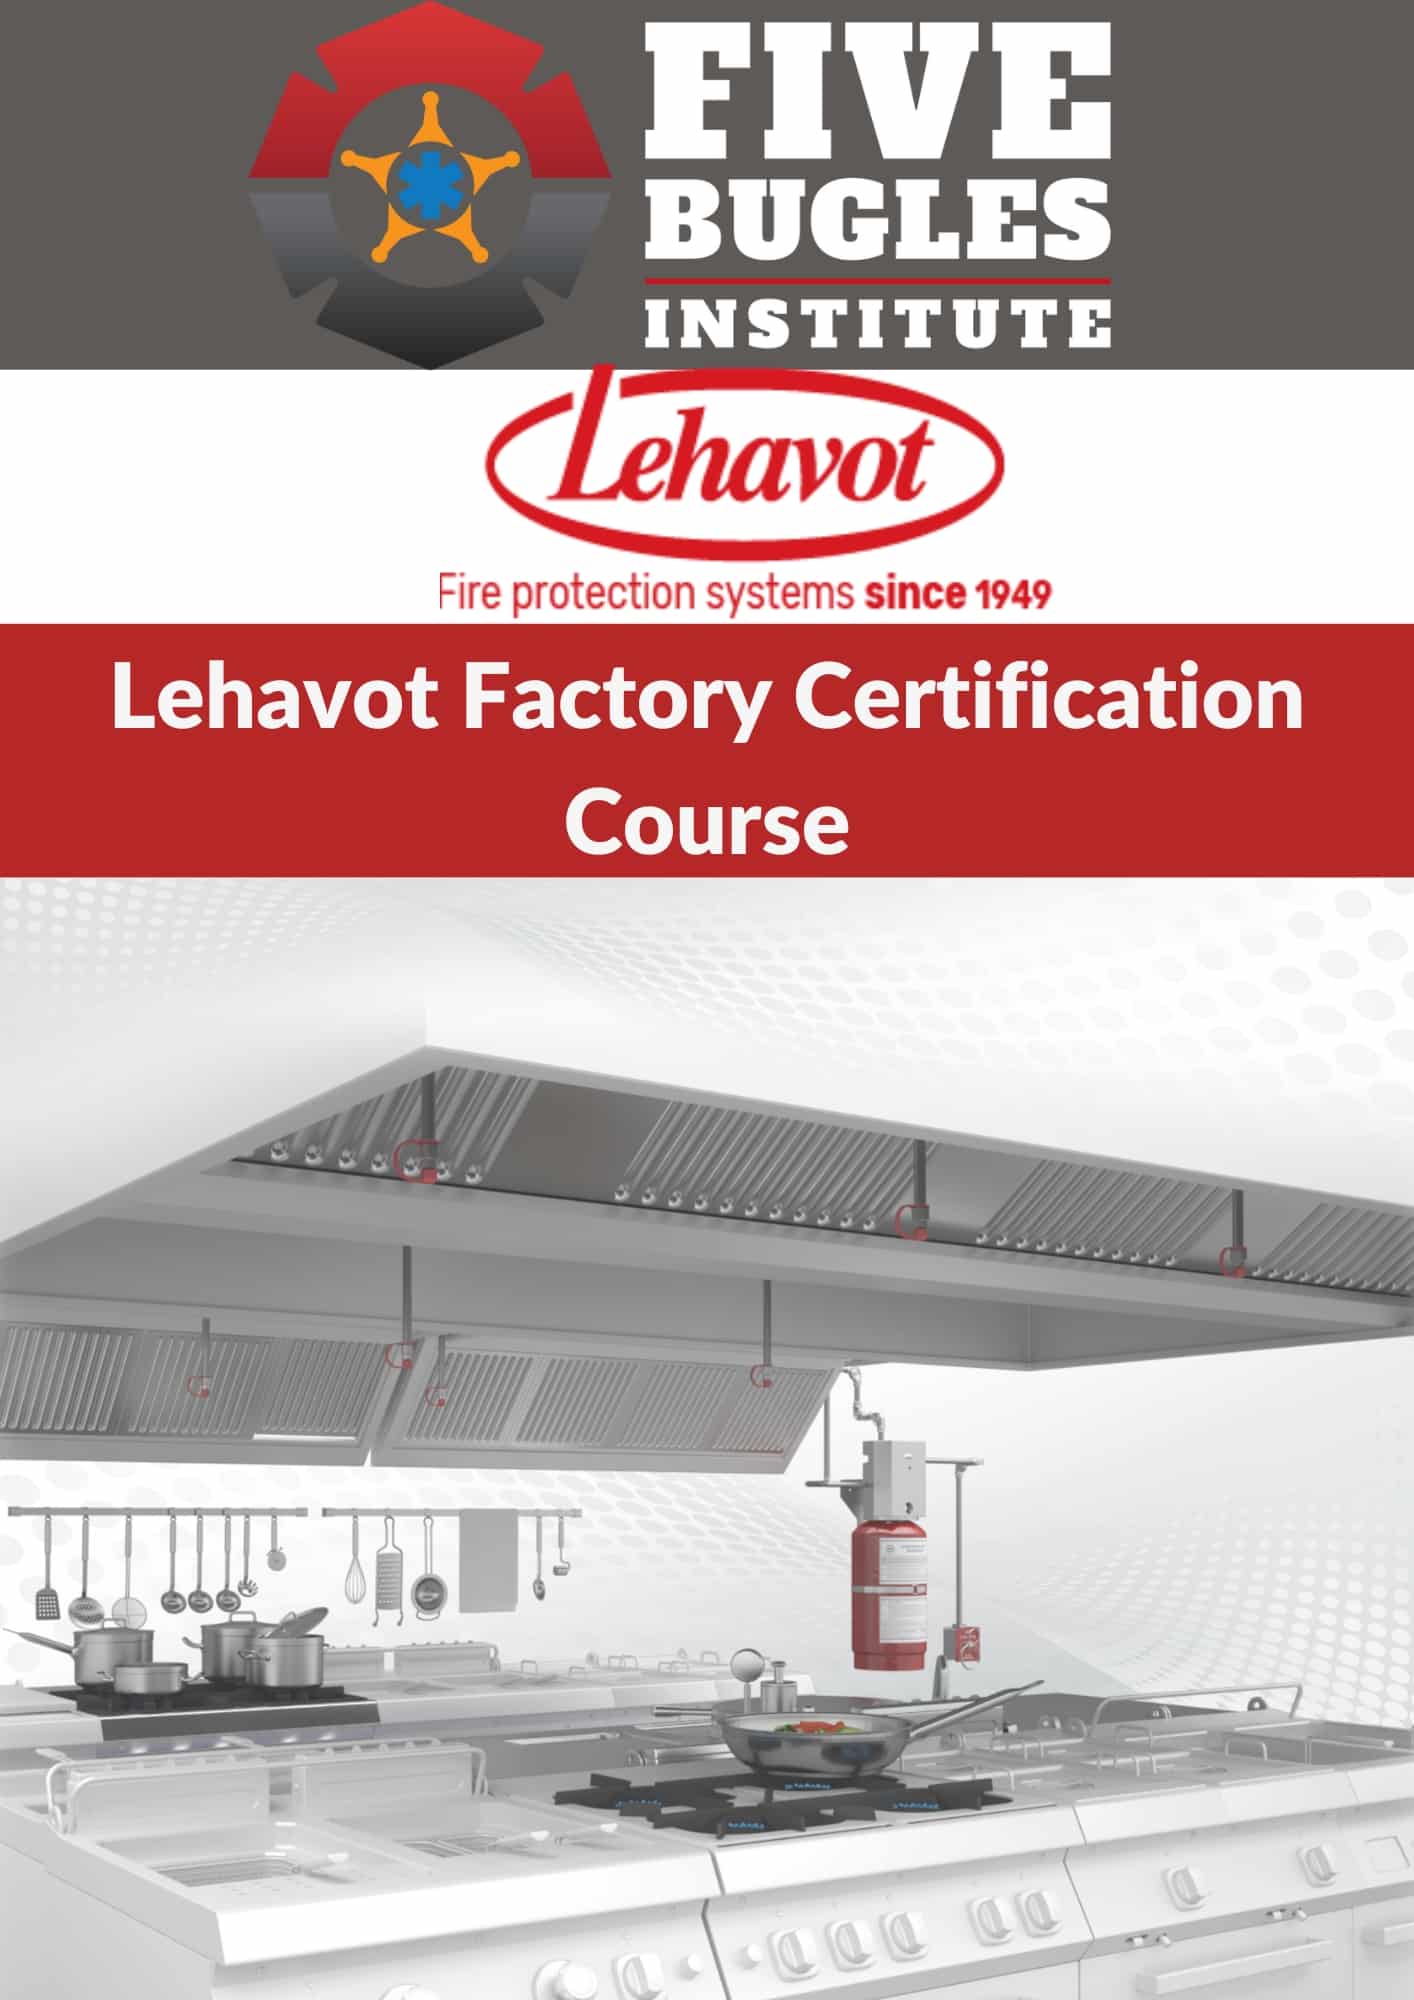 Lehavot Factory Certification Course